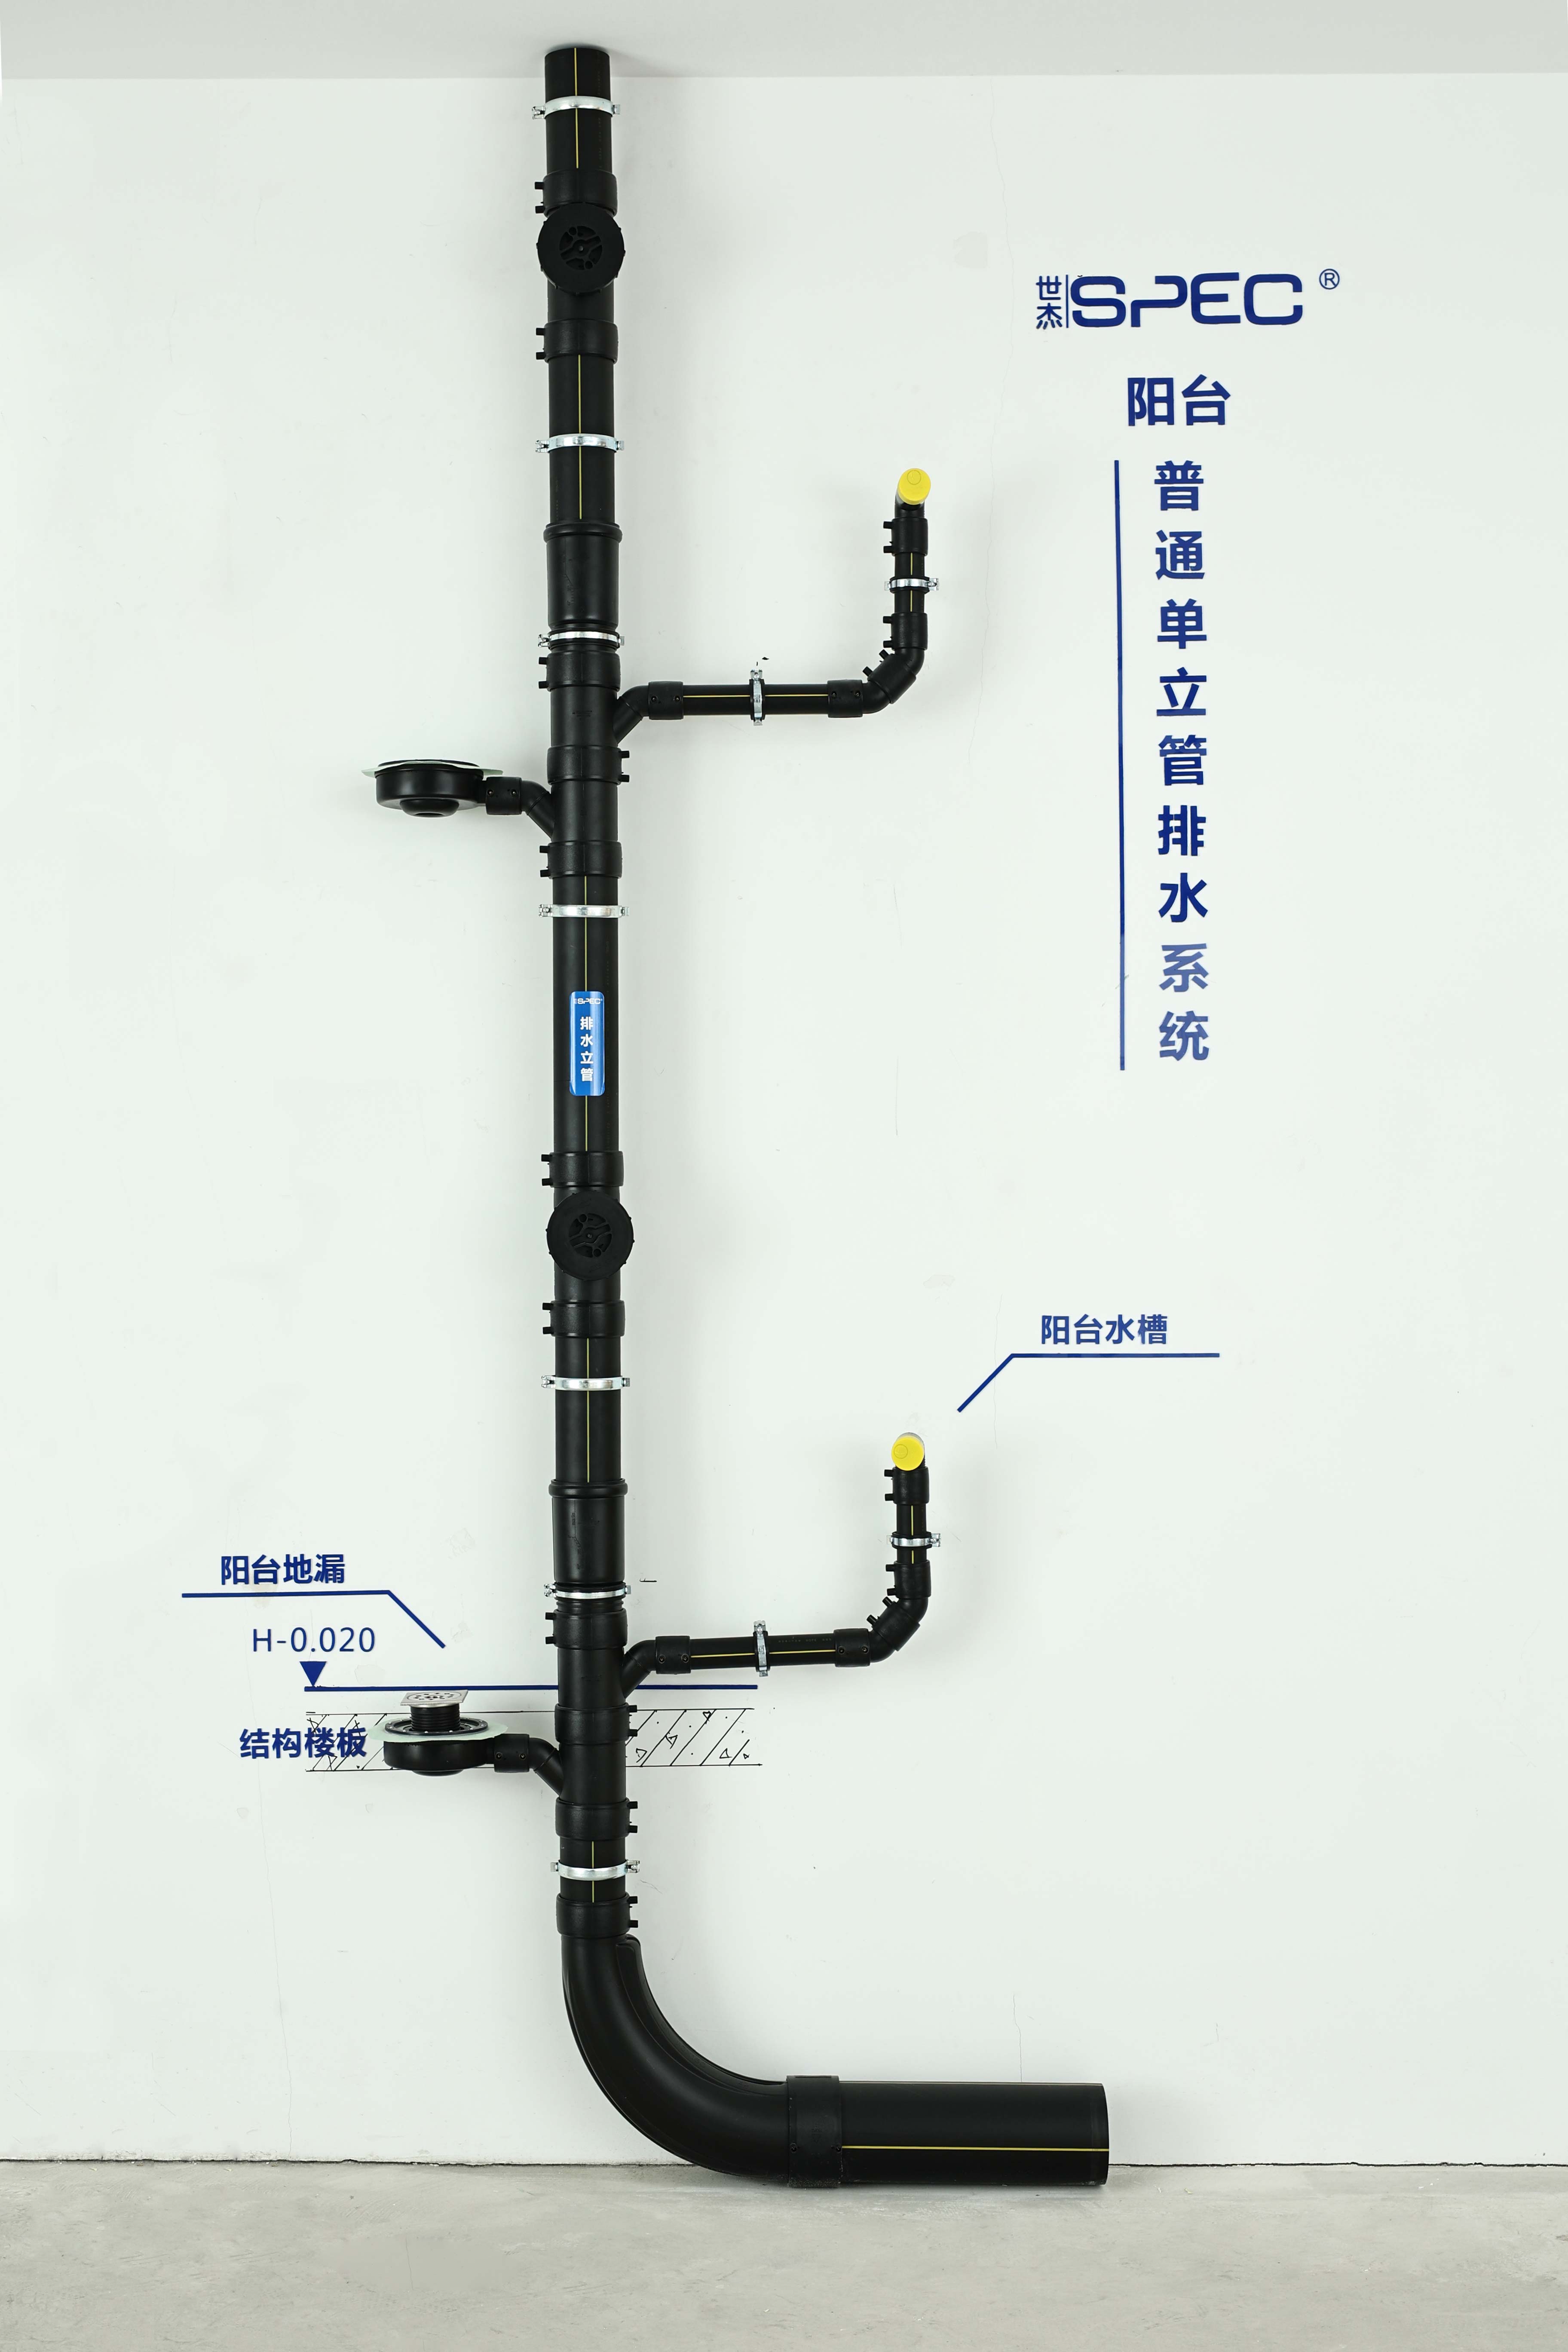  普通单立管排水系统(阳台)